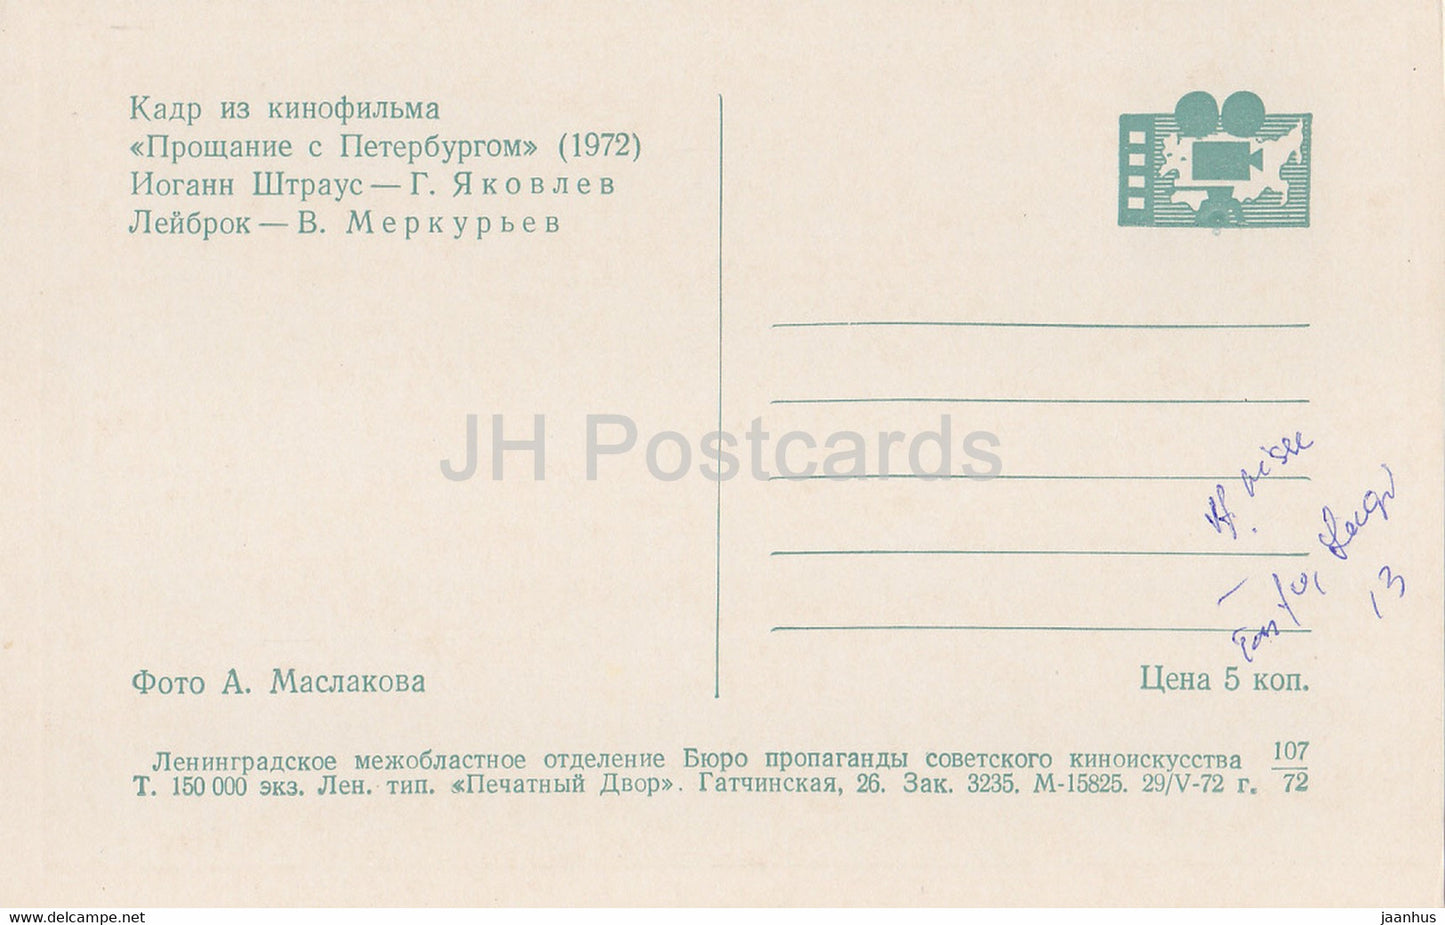 Abschied von St. Petersburg – Schauspieler G. Yakovlev und V. Merkuryev – Film – Film – Sowjet – 1972 – Russland UdSSR – unbenutzt